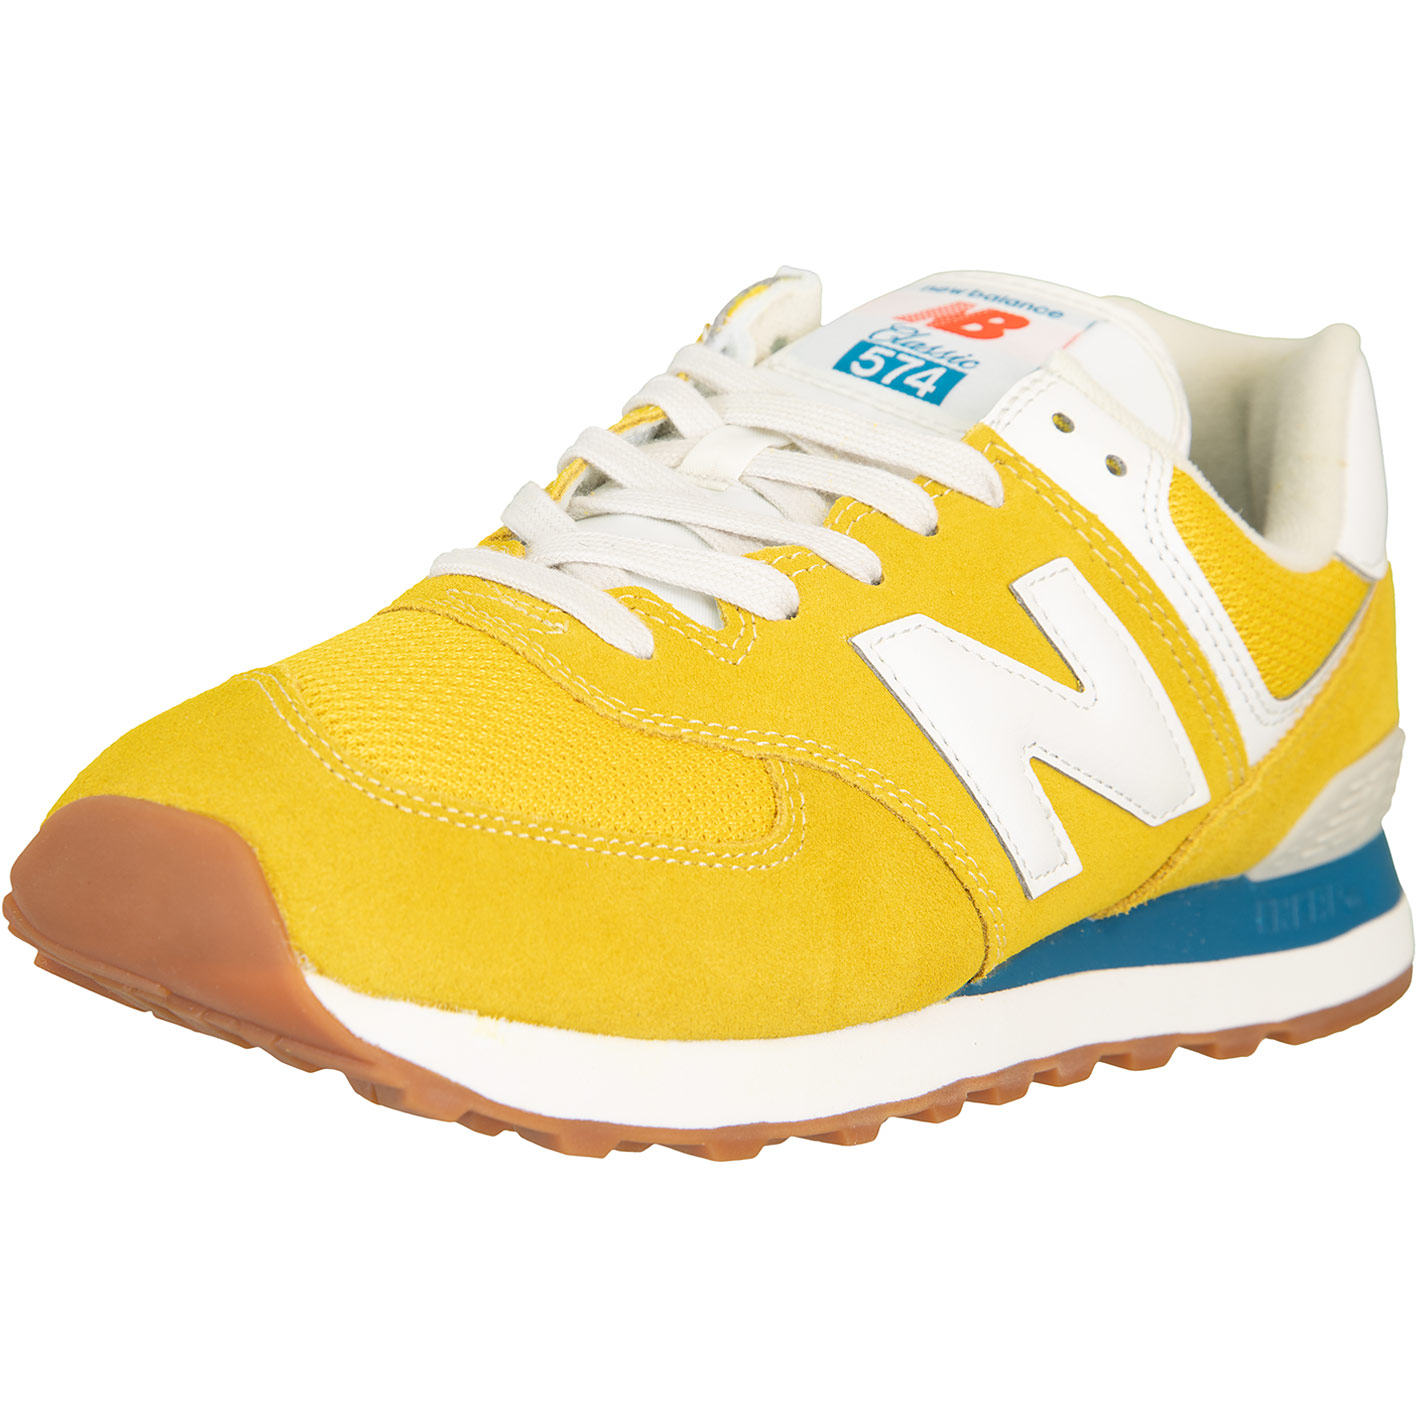 ☆ New Balance NB 574 Sneaker Schuhe gelb - hier bestellen!